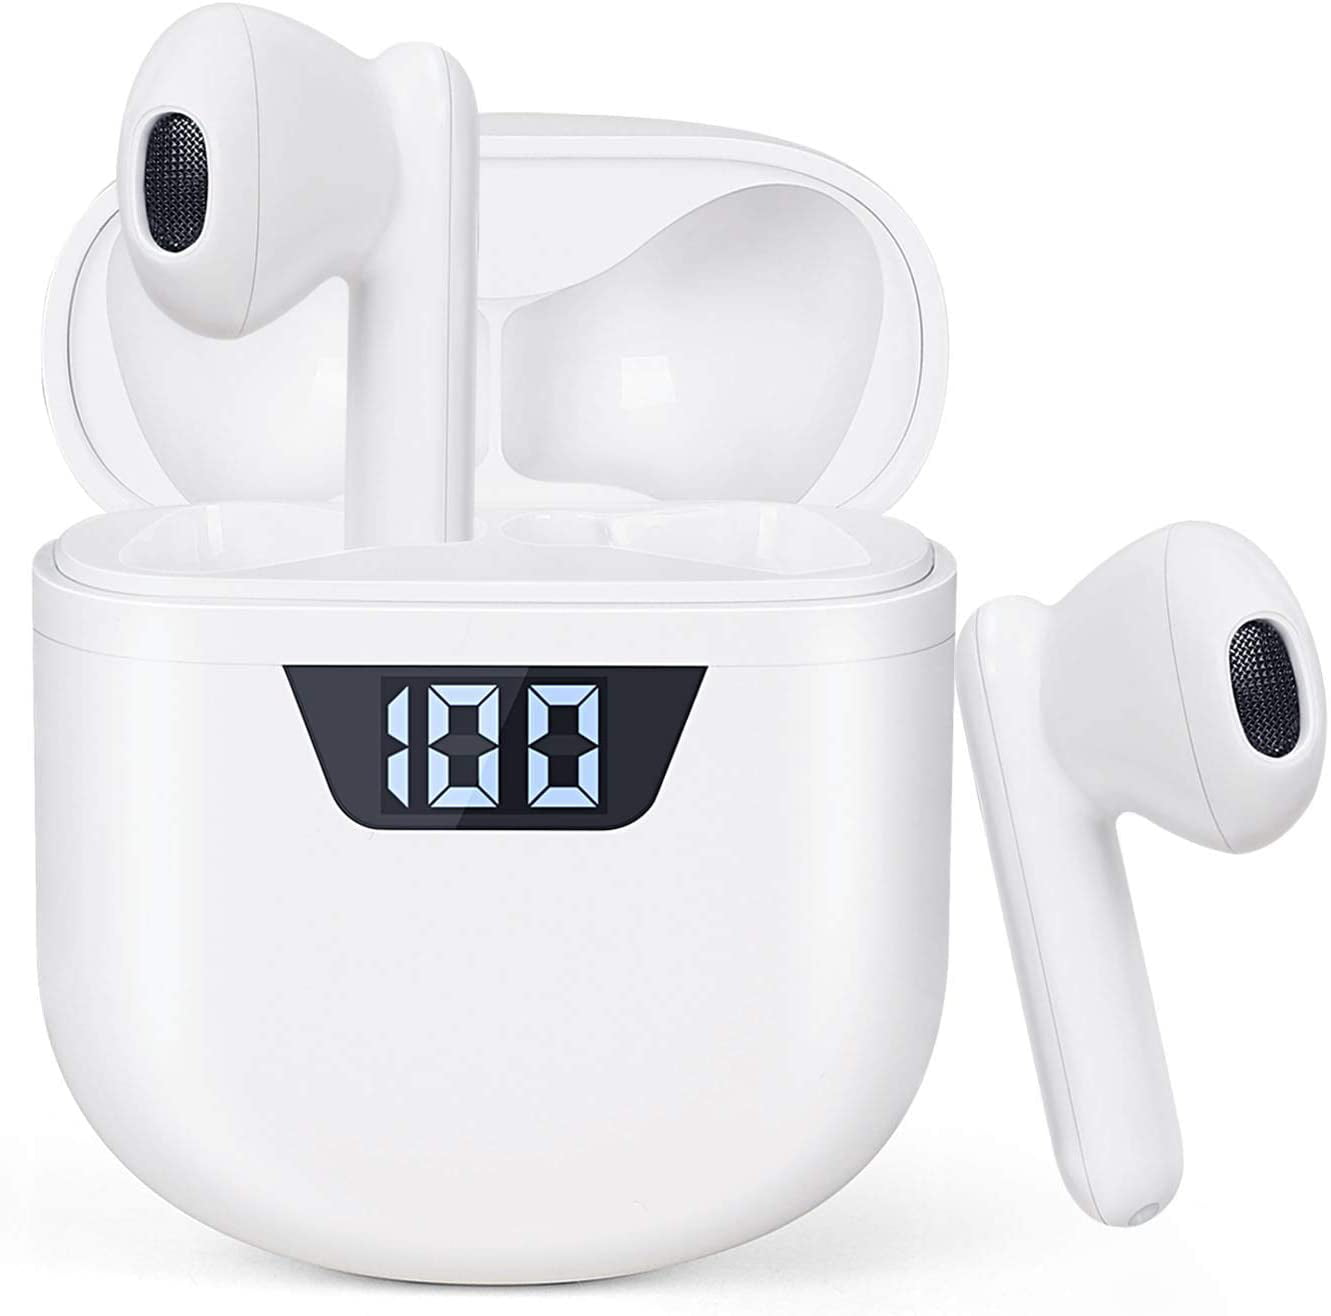 Wireless Bluetooth Headphones Waterproof Mic Earphones Pods For iPhone & Android 